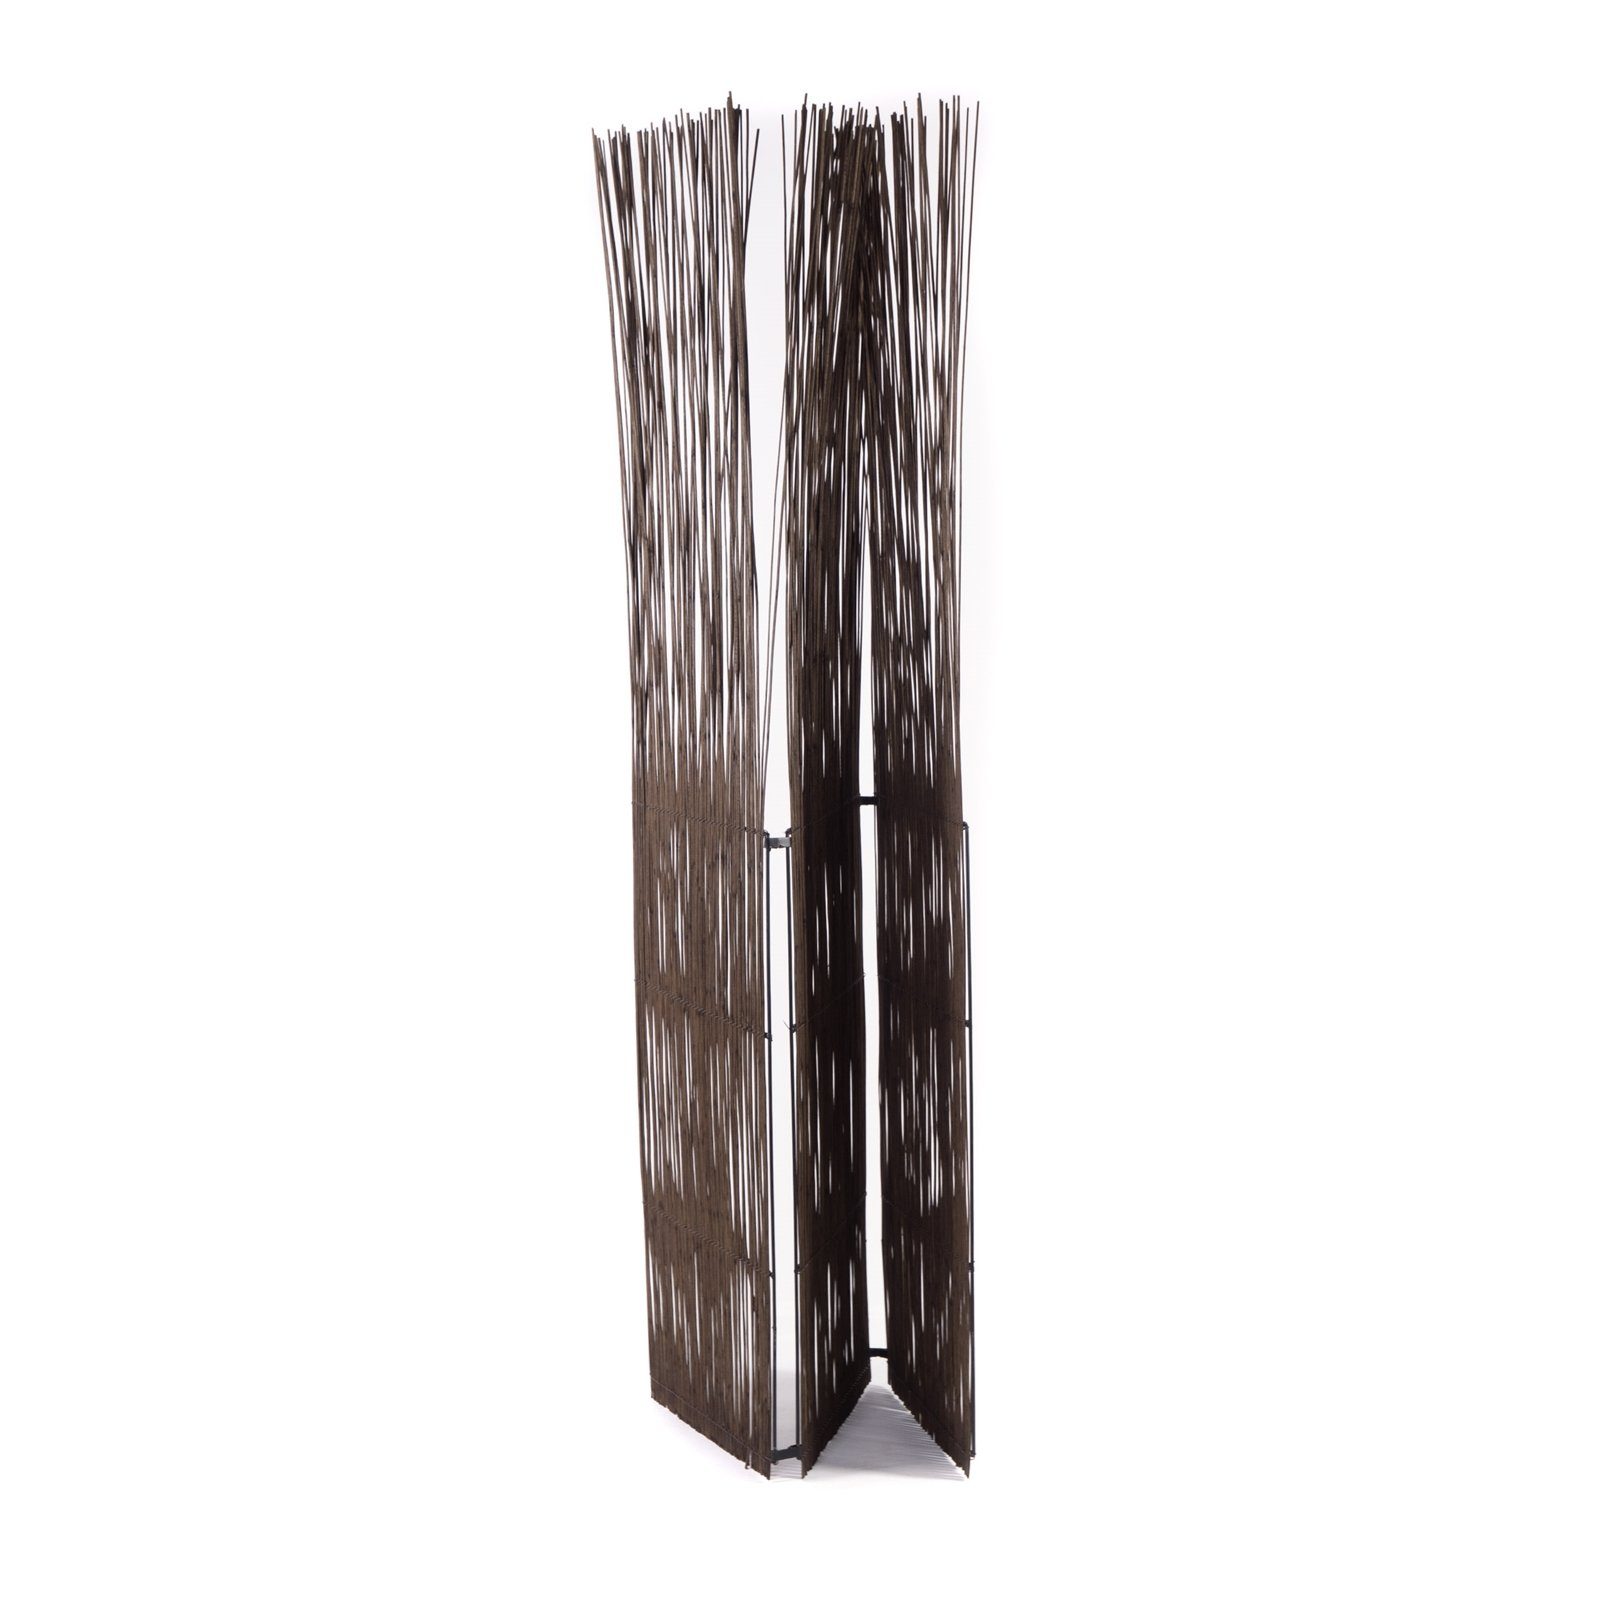 CREEDWOOD Paravent RAUMTEILER "SPIKE", Paravent, Sichtschutz, cm, 170 braun Natur Weiden, Fa